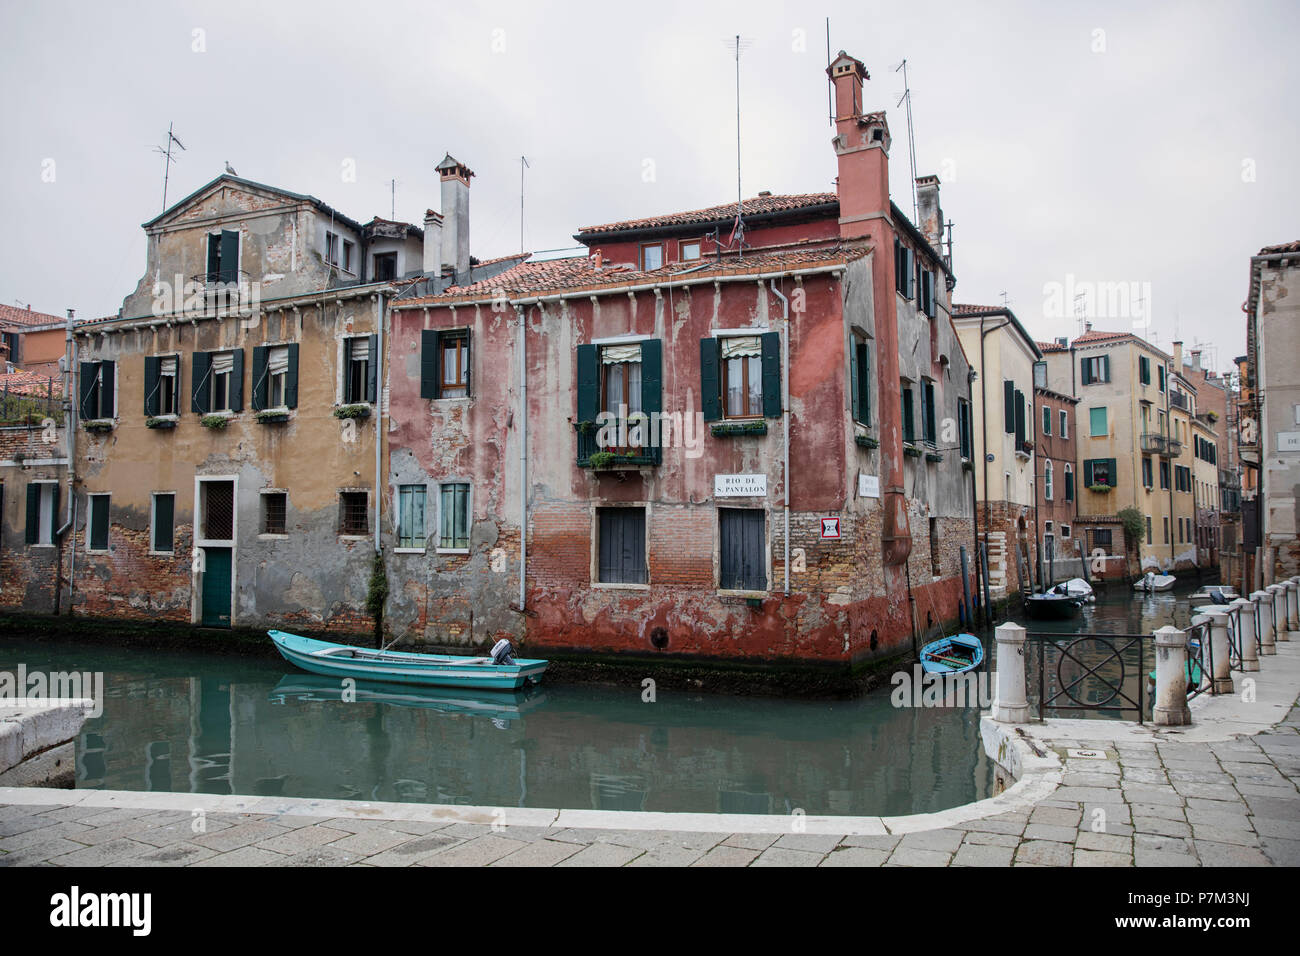 Old house row at canal, Venice, Veneto, Italy Stock Photo